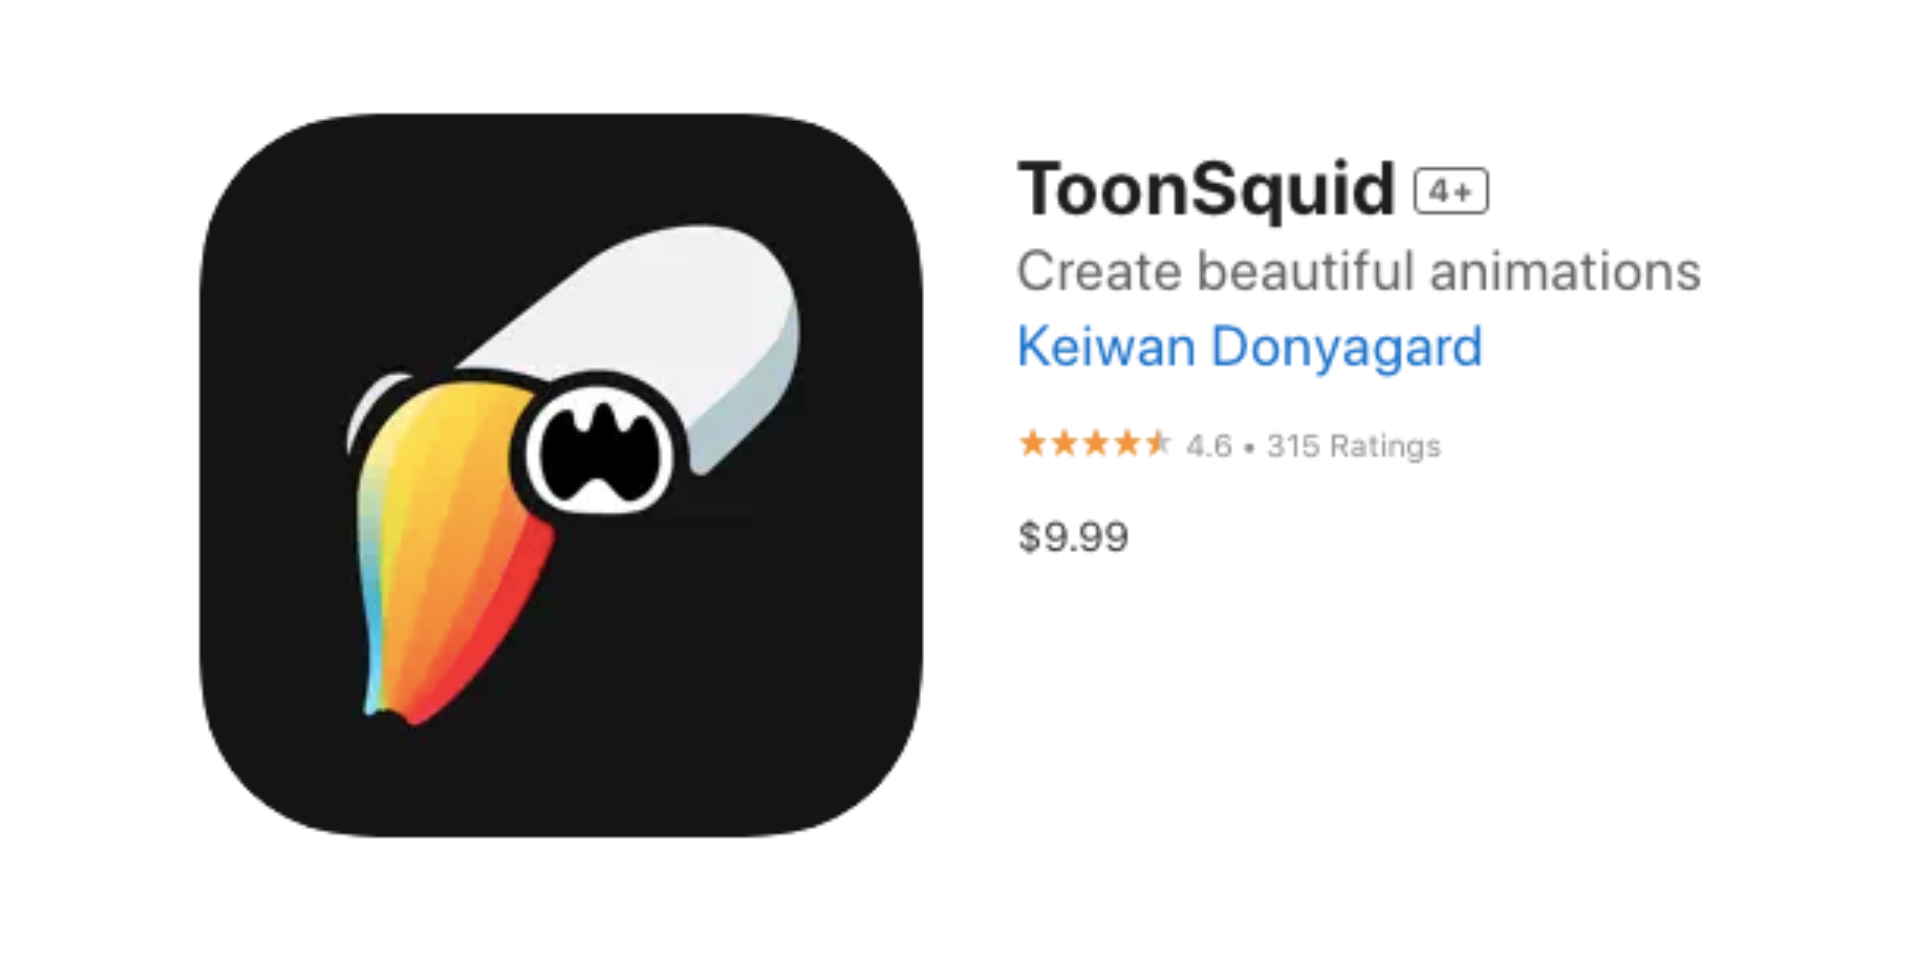 ToonSquid